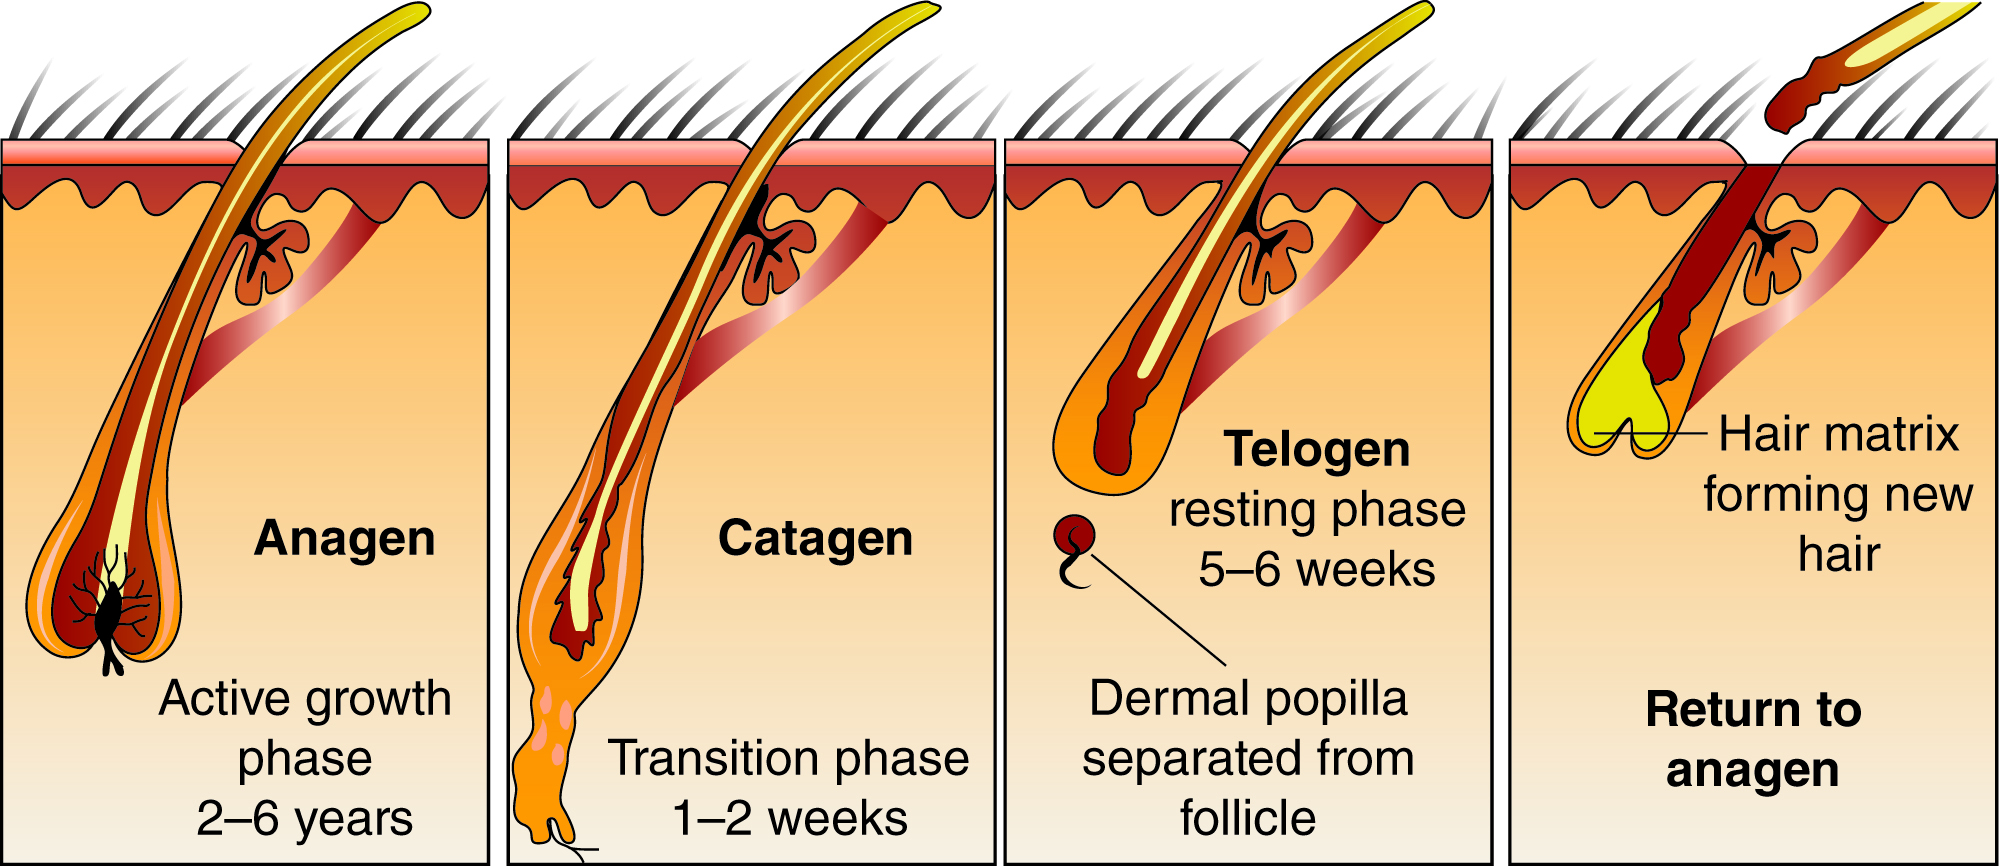 hair follicle in phases: Anagen, Catagen, Telogen, Return to anagen